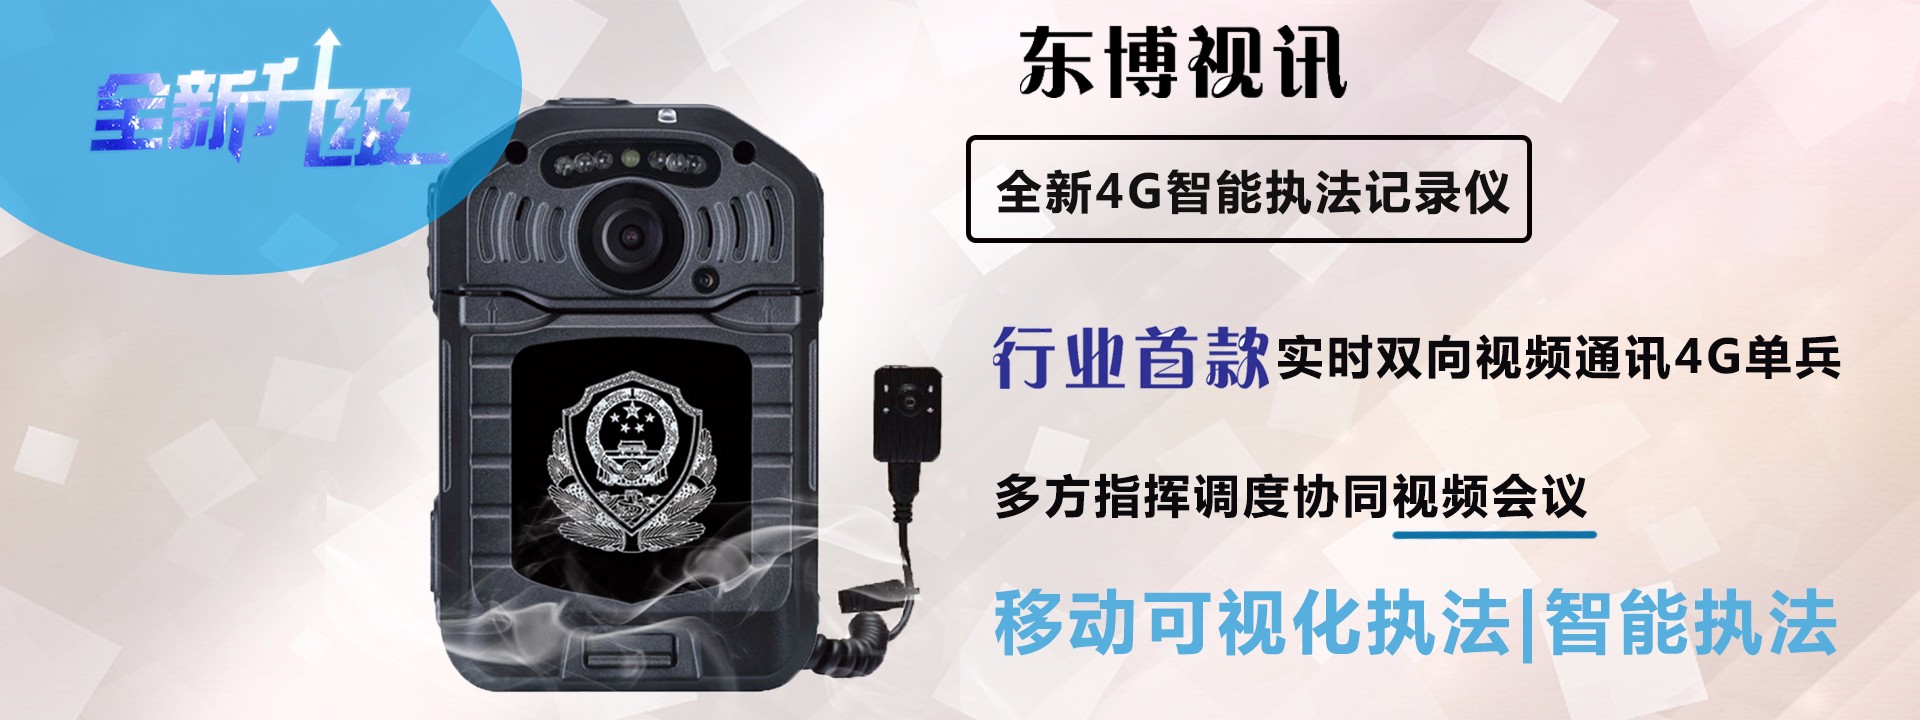 东博视讯4G智能执法记录仪